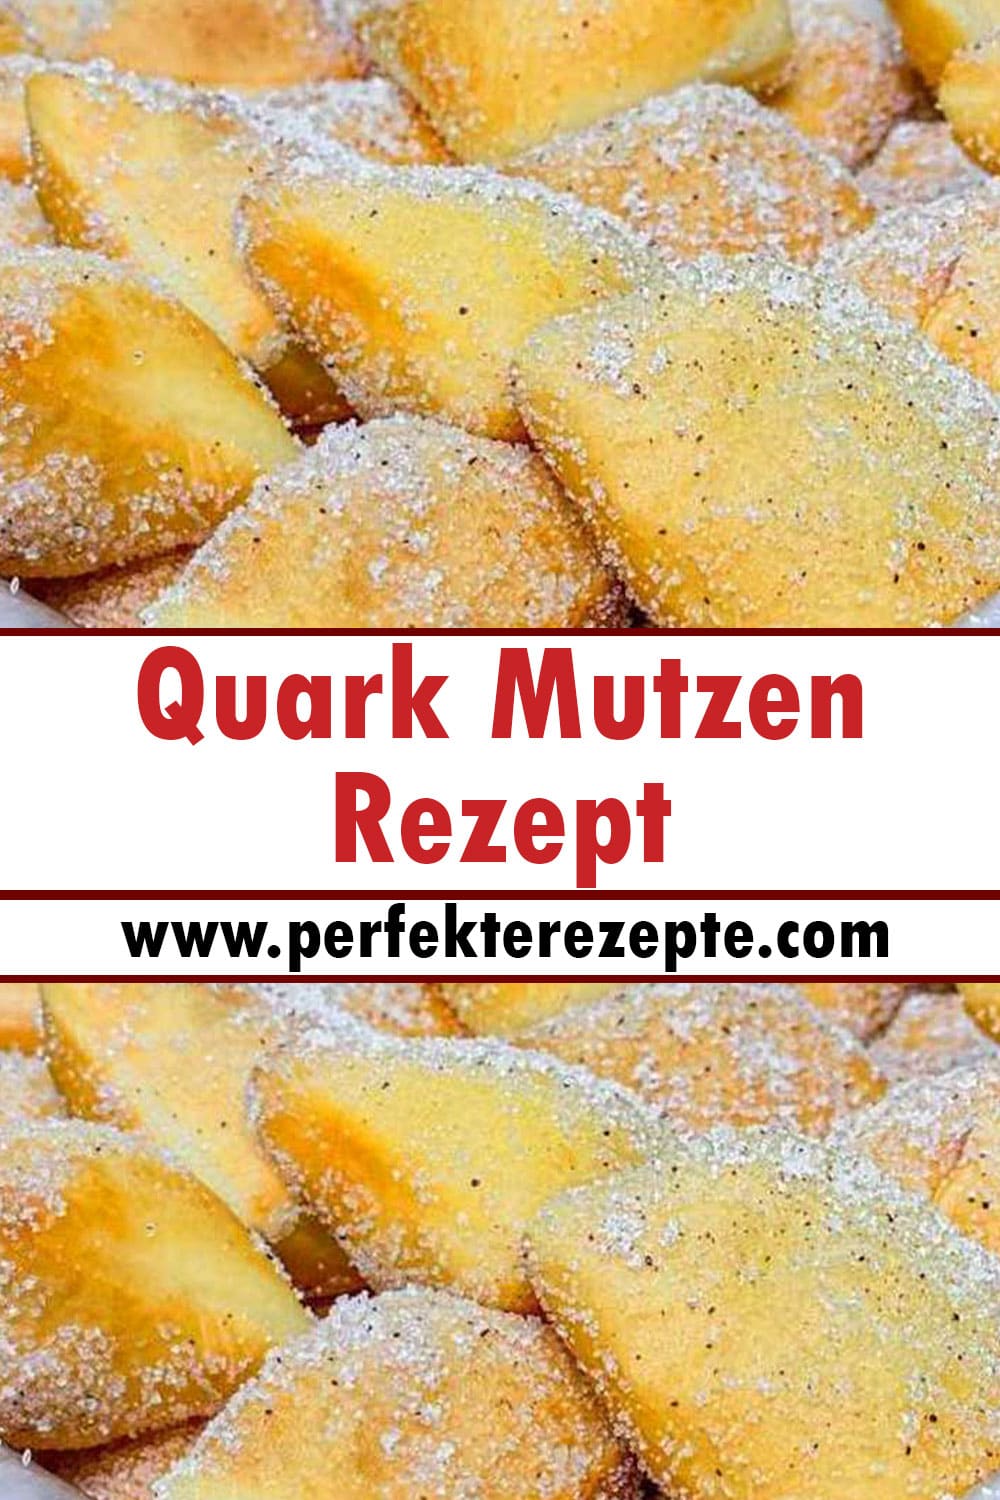 Quark Mutzen Rezept, besser als beim Bäcker